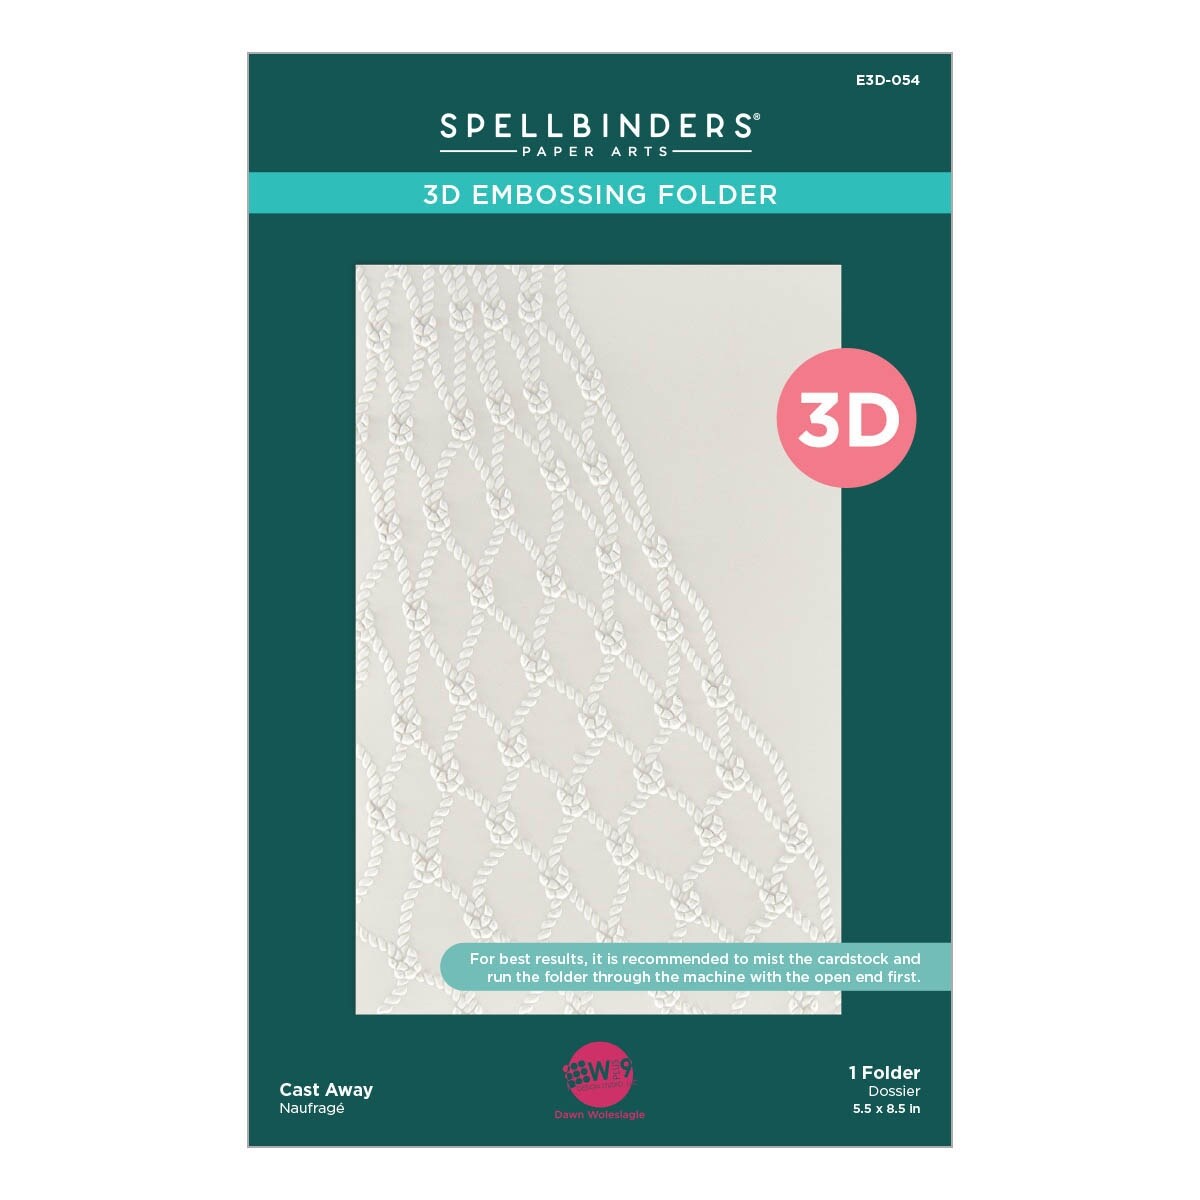 Spellbinders 3D Embossing Folder by Dawn Woleslagle-Cast Away